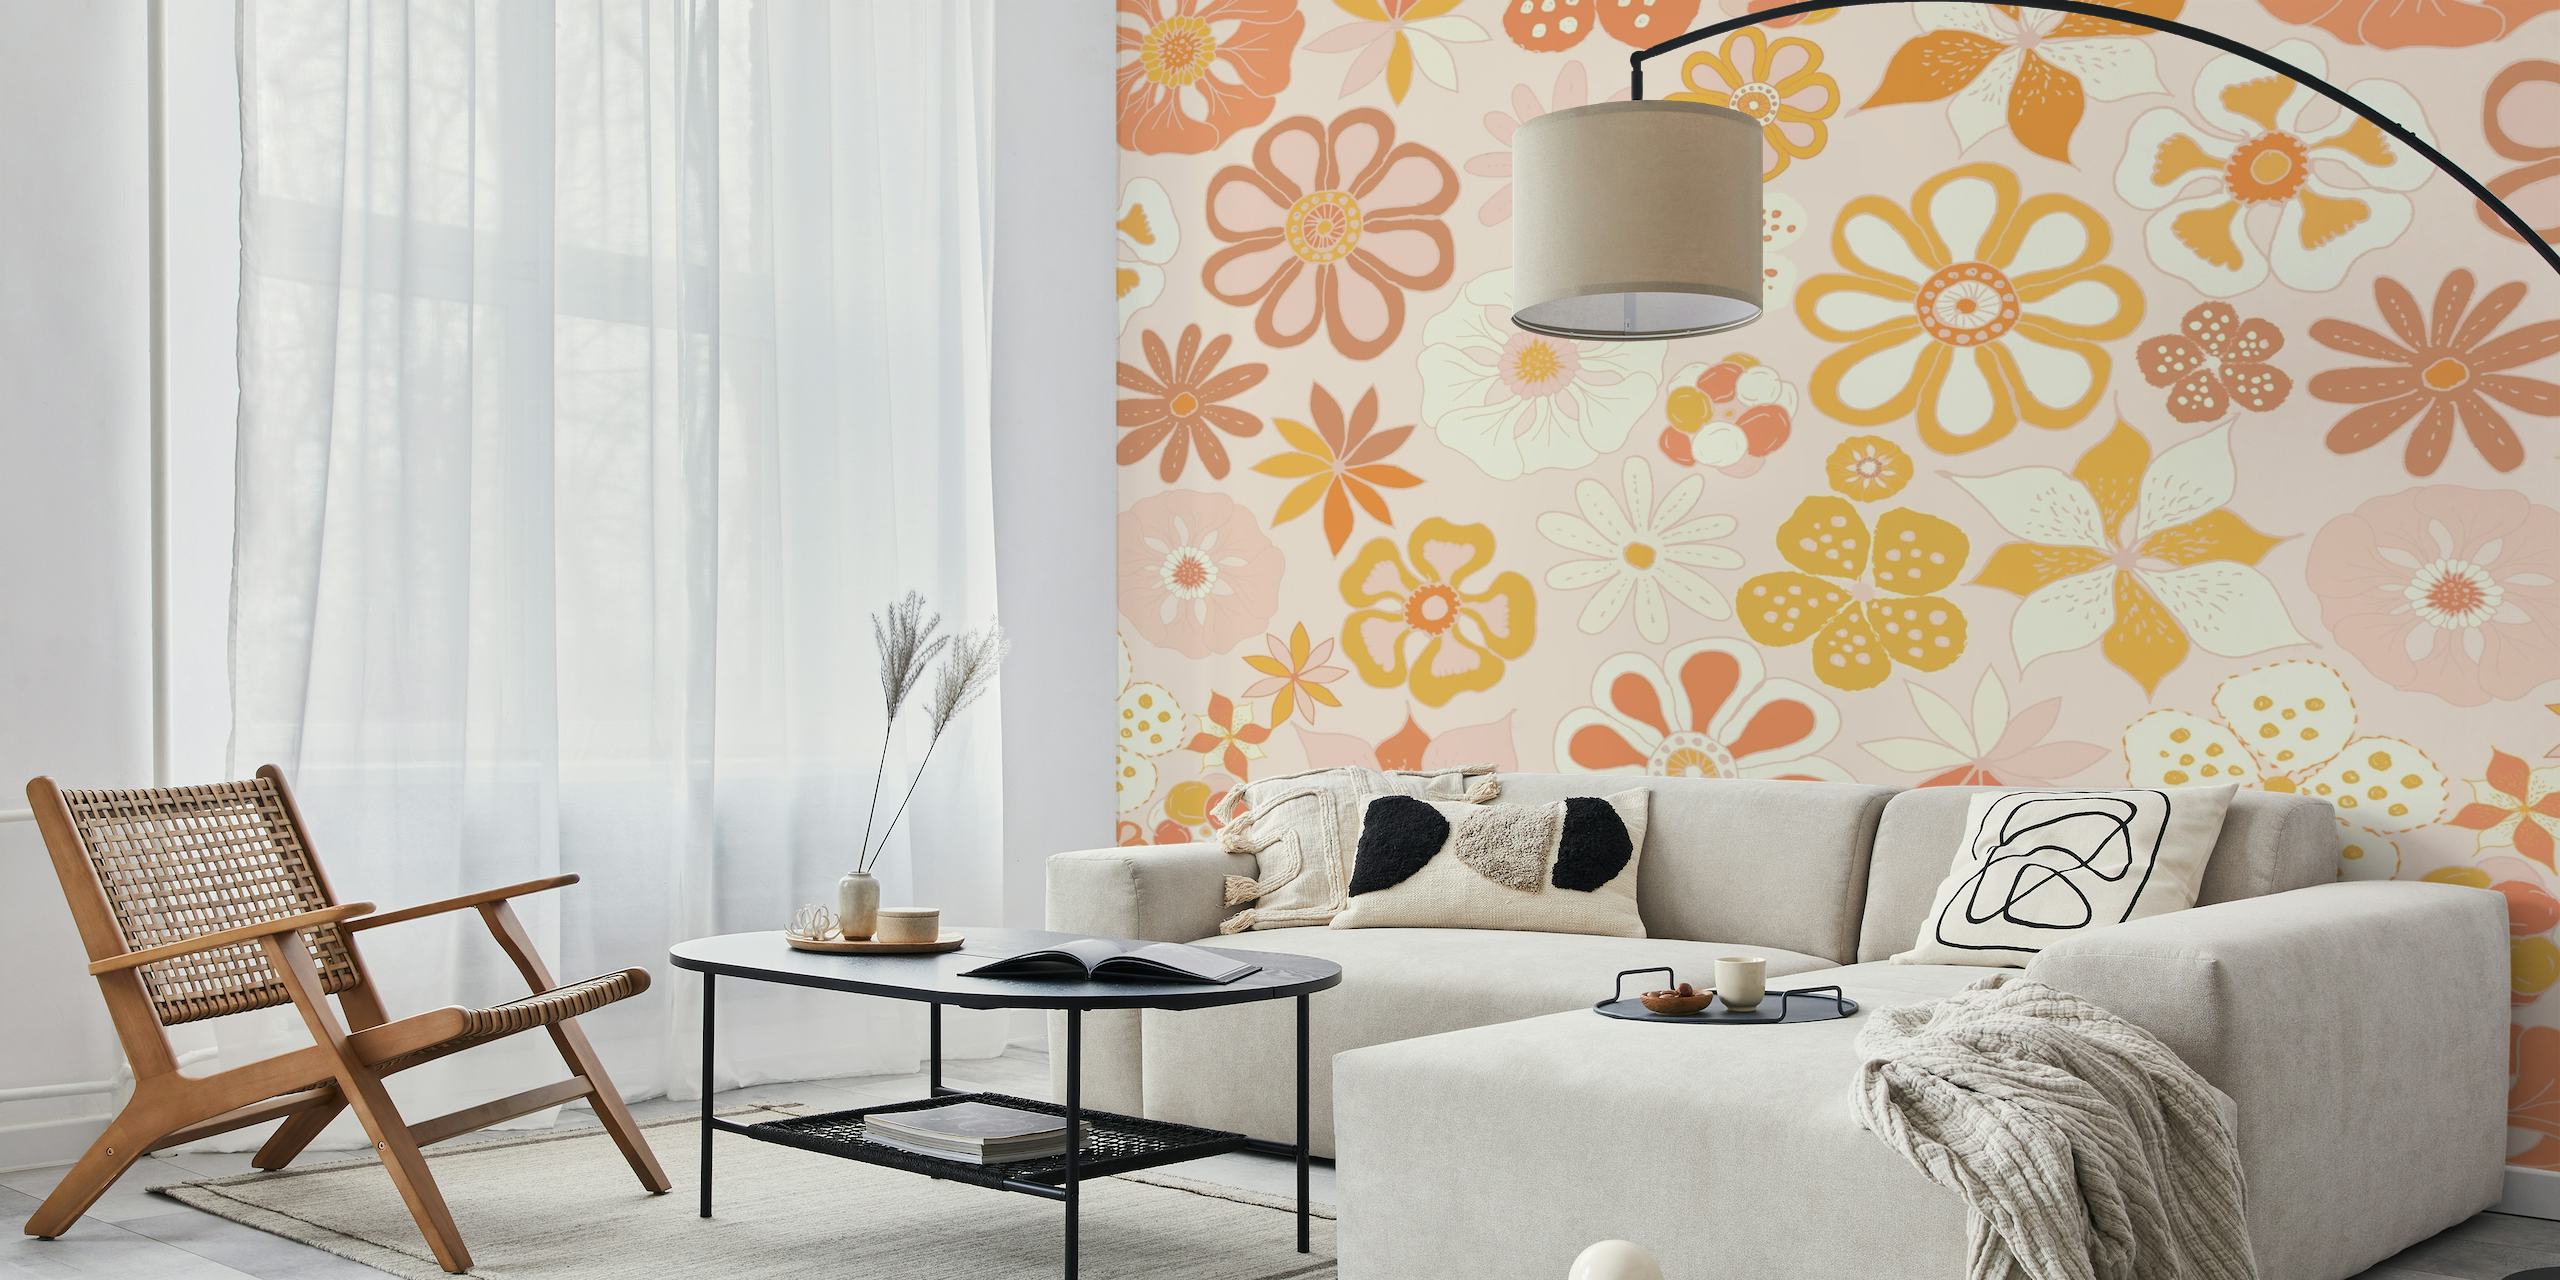 Caldo murale con motivi floreali in tonalità pastello per l'arredamento della casa